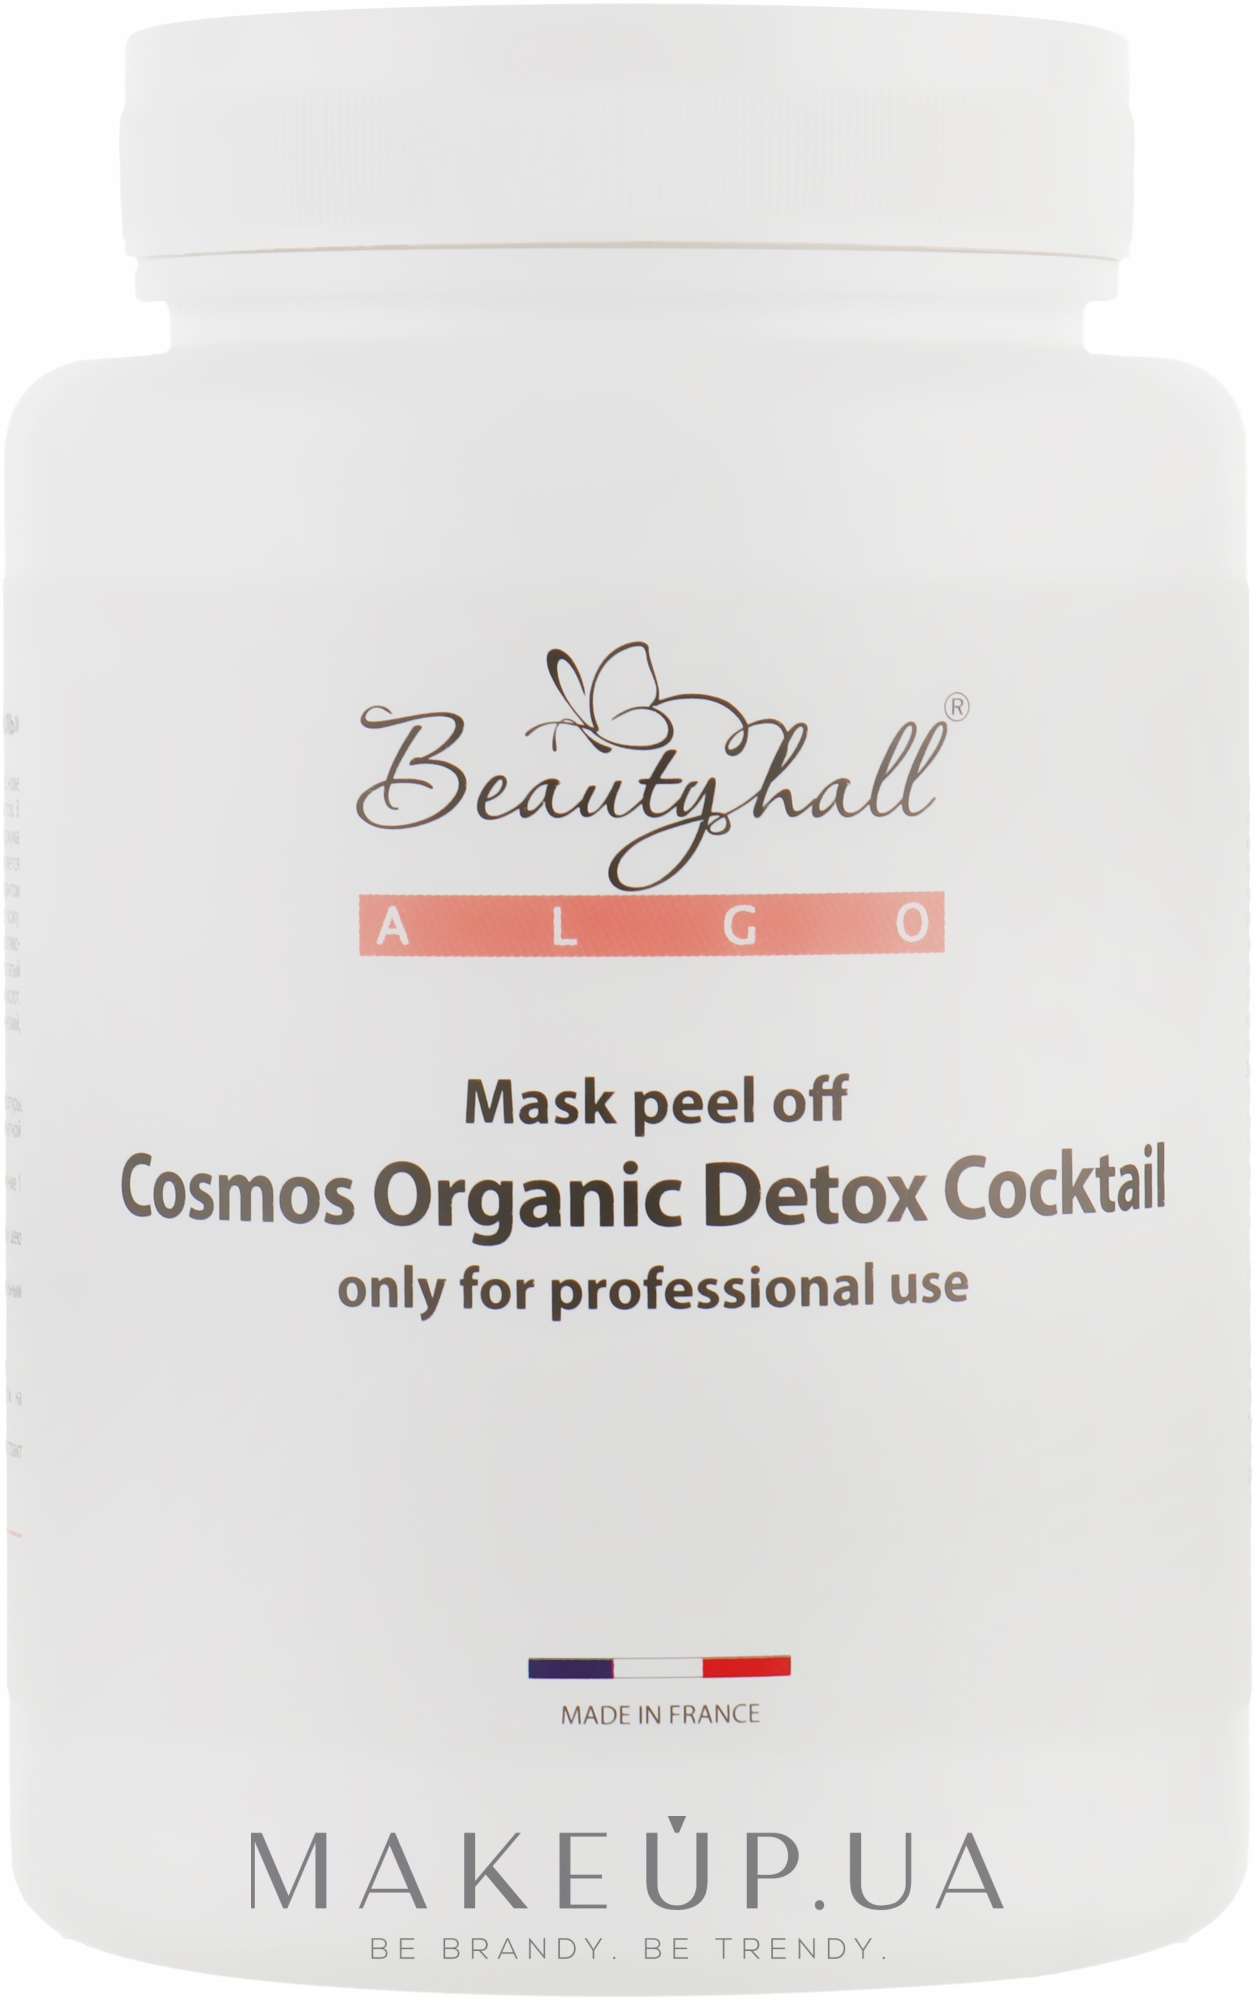 Альгинатная маска "Детокс Коктейль" - Beautyhall ALGO peel off mask Cosmos Organic Detox Cocktail — фото 200g